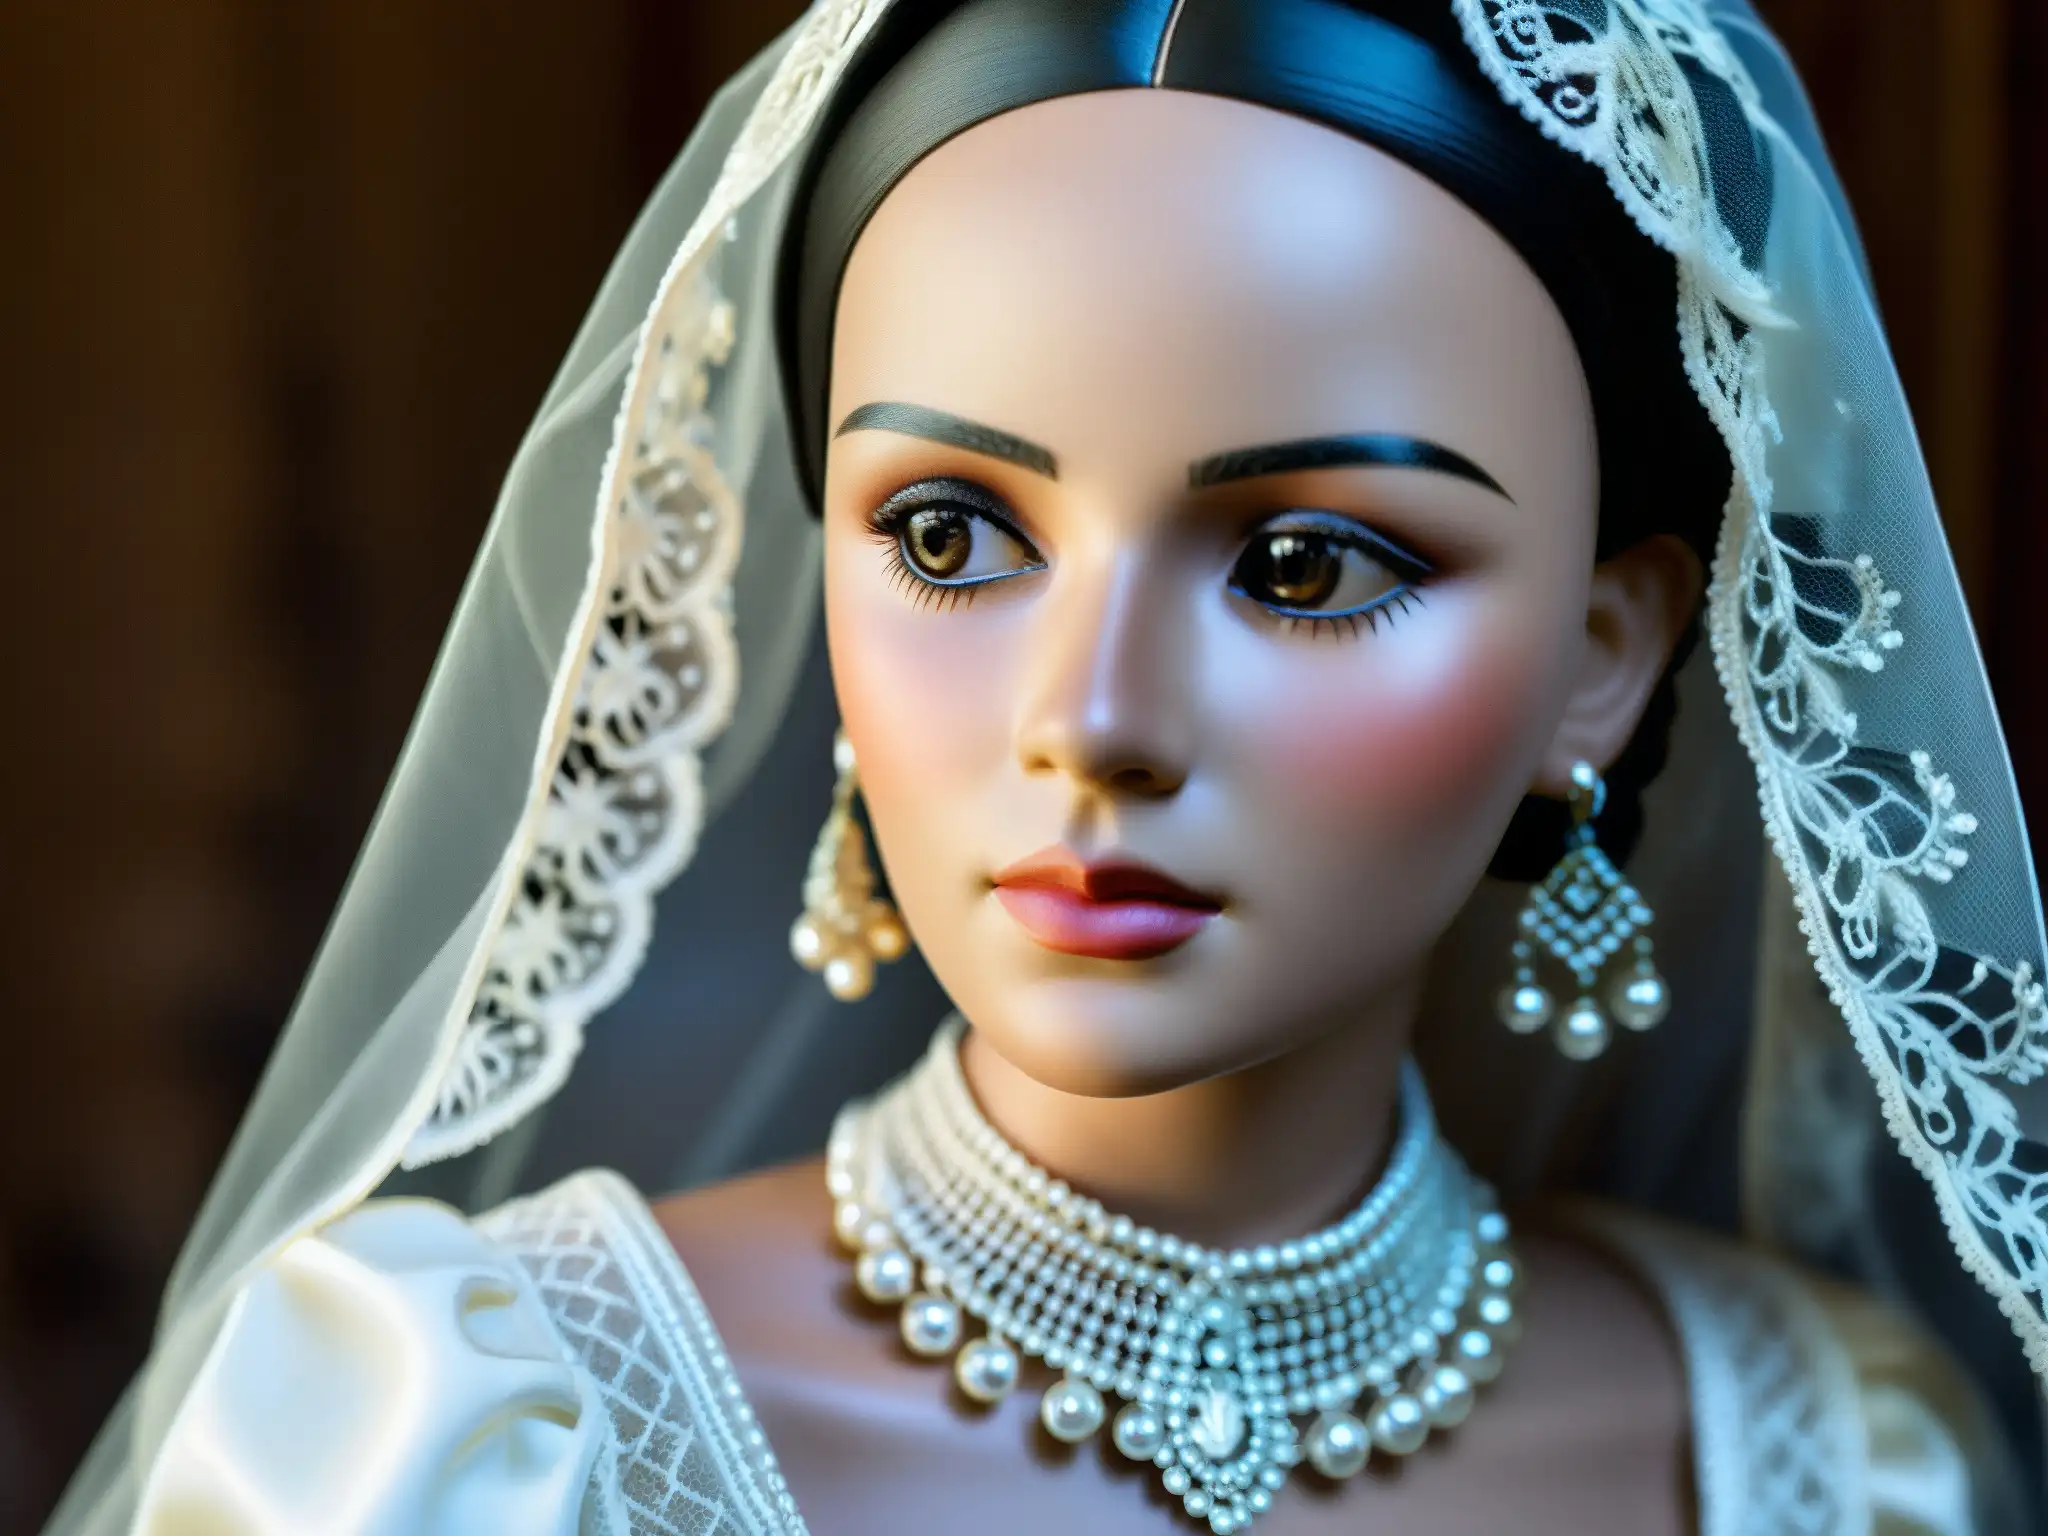 La Pascualita, leyenda urbana de Chihuahua, cautiva con su mirada misteriosa en un elegante vestido de novia